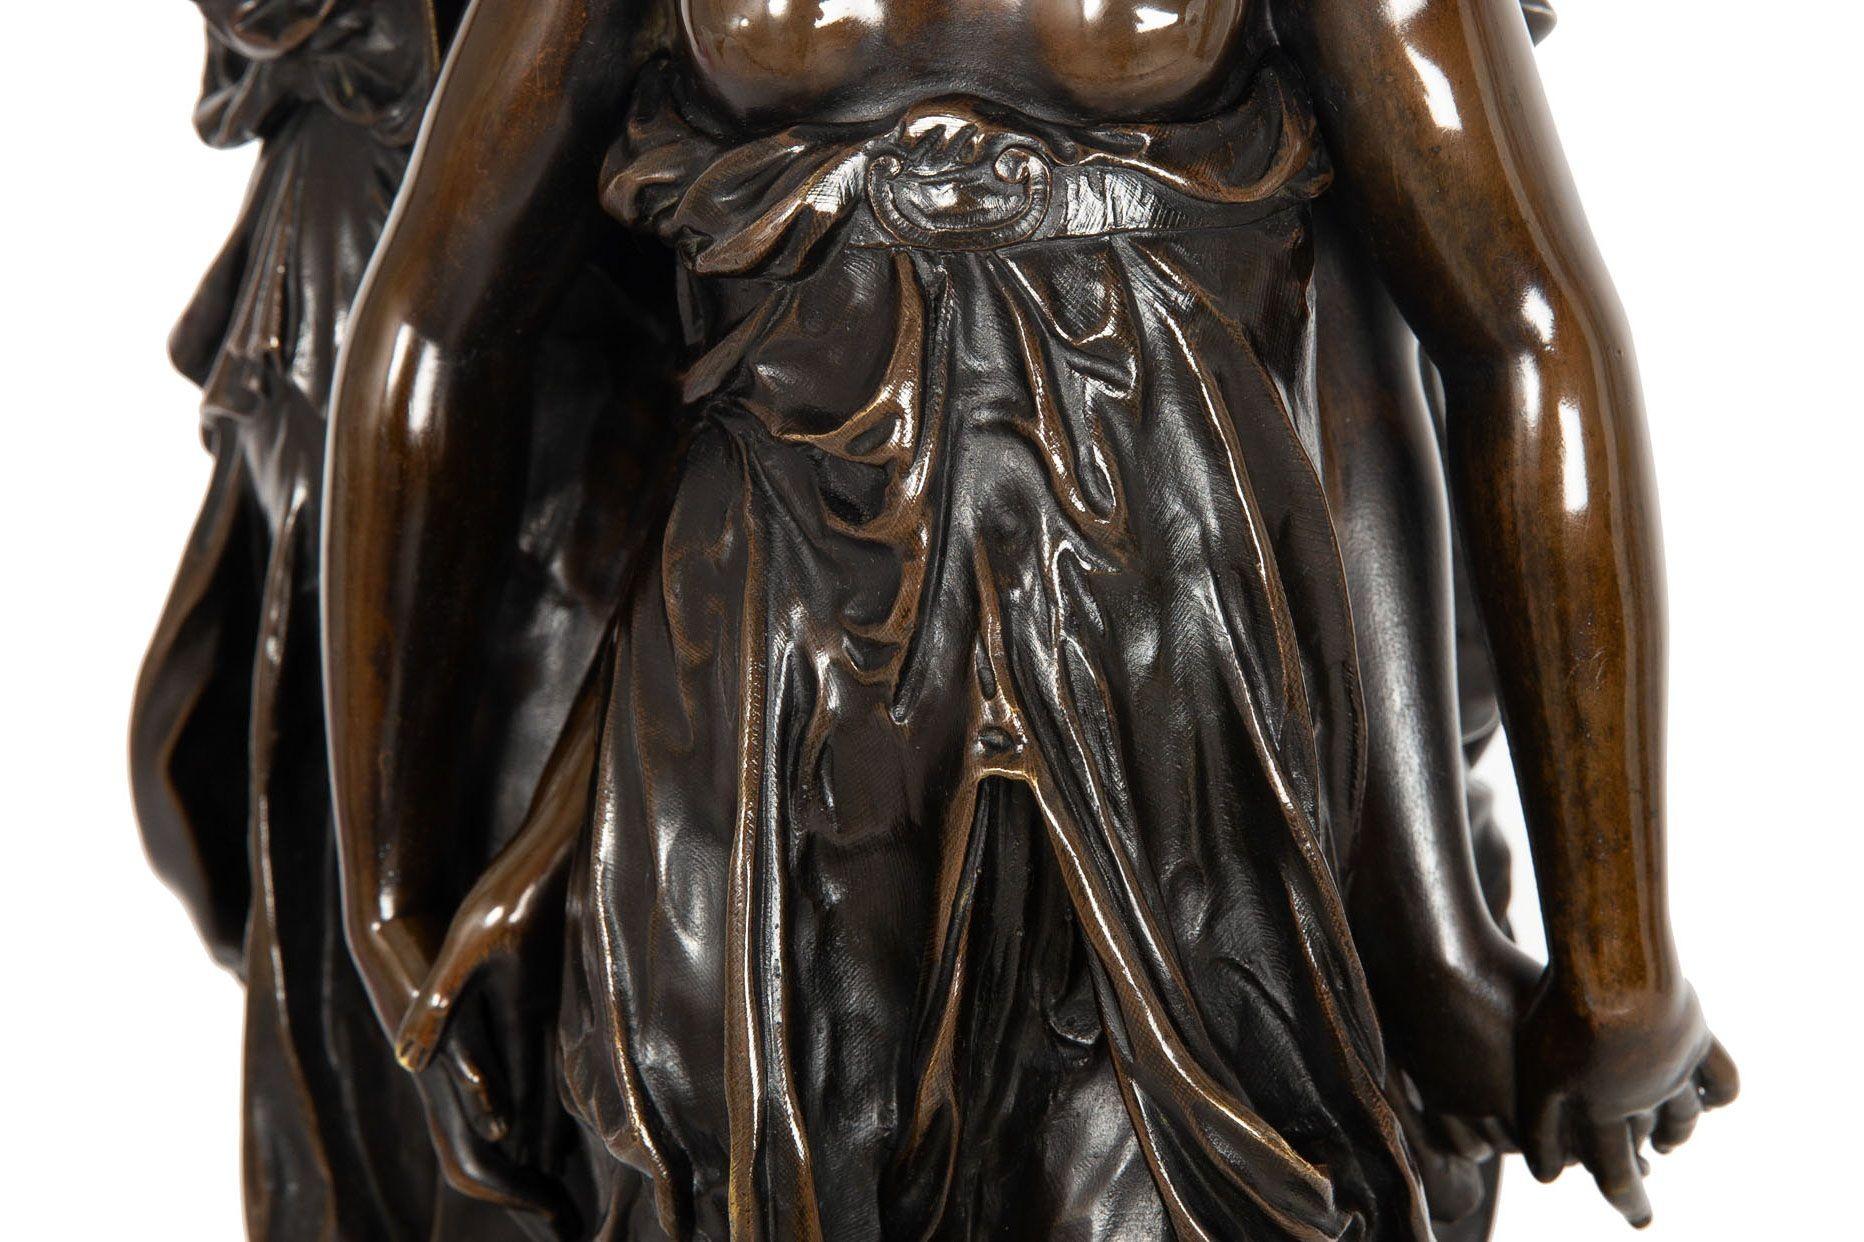 French Antique Bronze Sculpture “Three Graces” after Germain Pilon For Sale 4